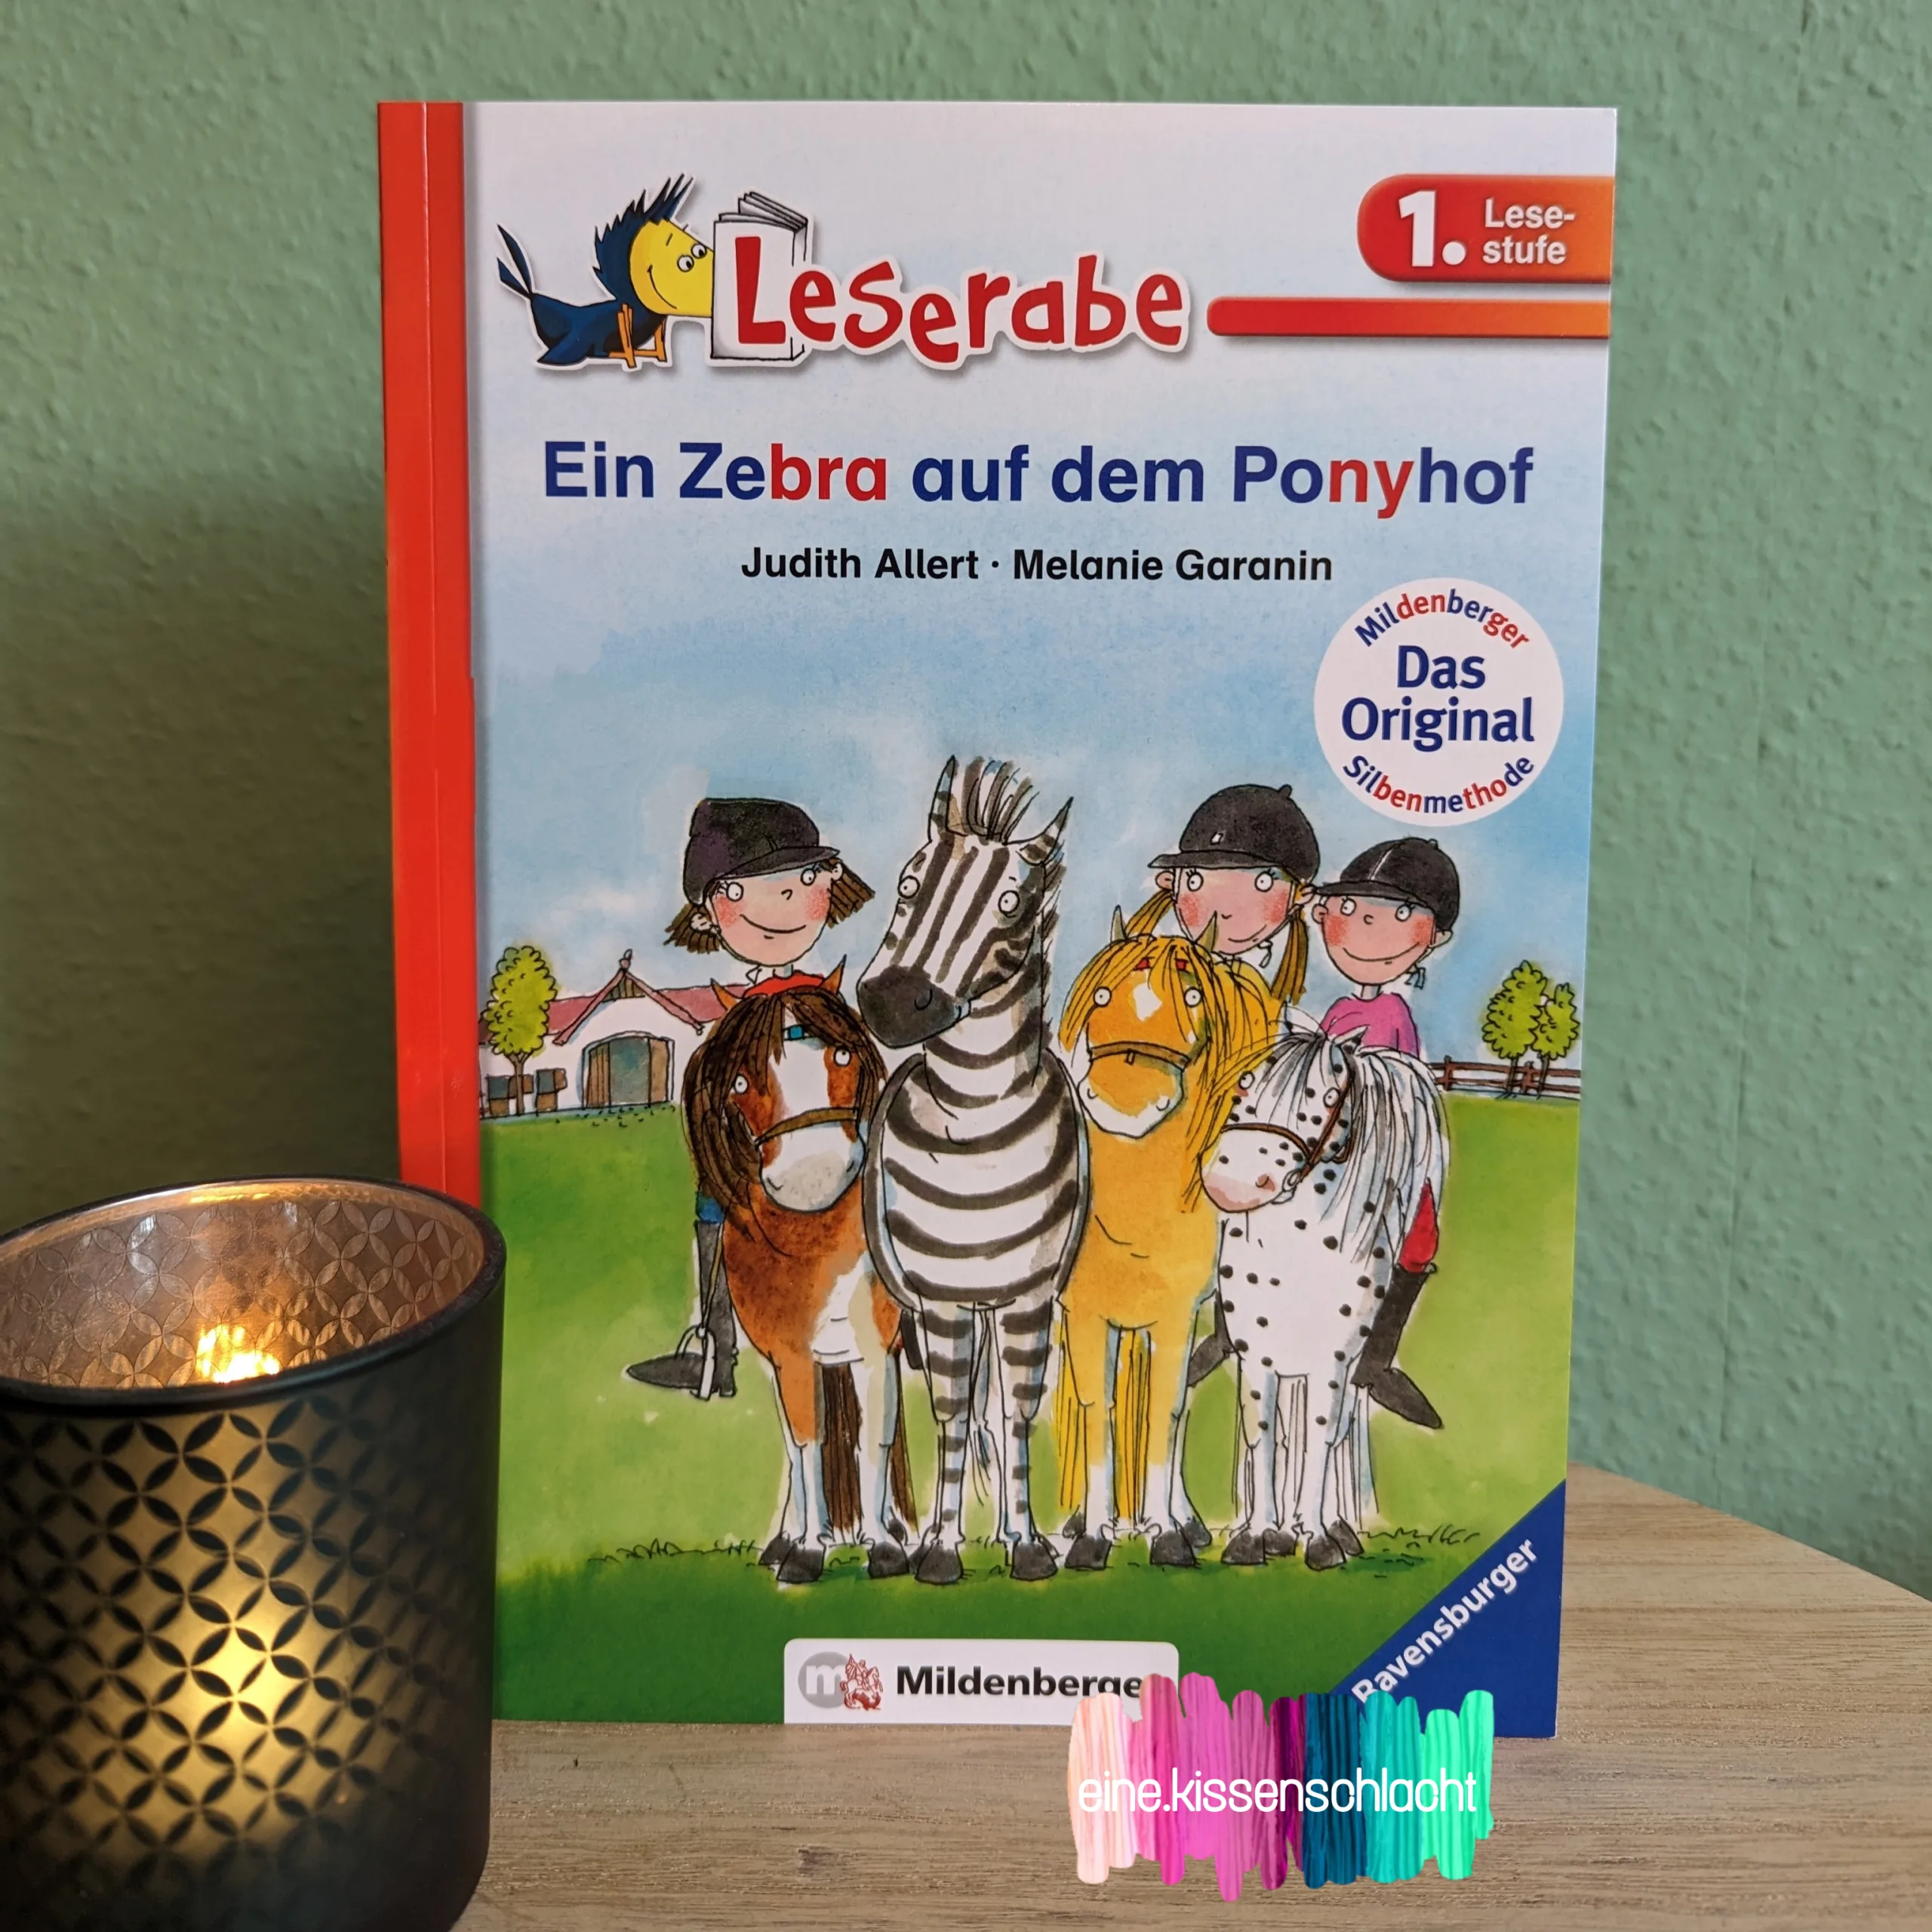 You are currently viewing Ein Zebra auf dem Ponyhof (Judith Allert)